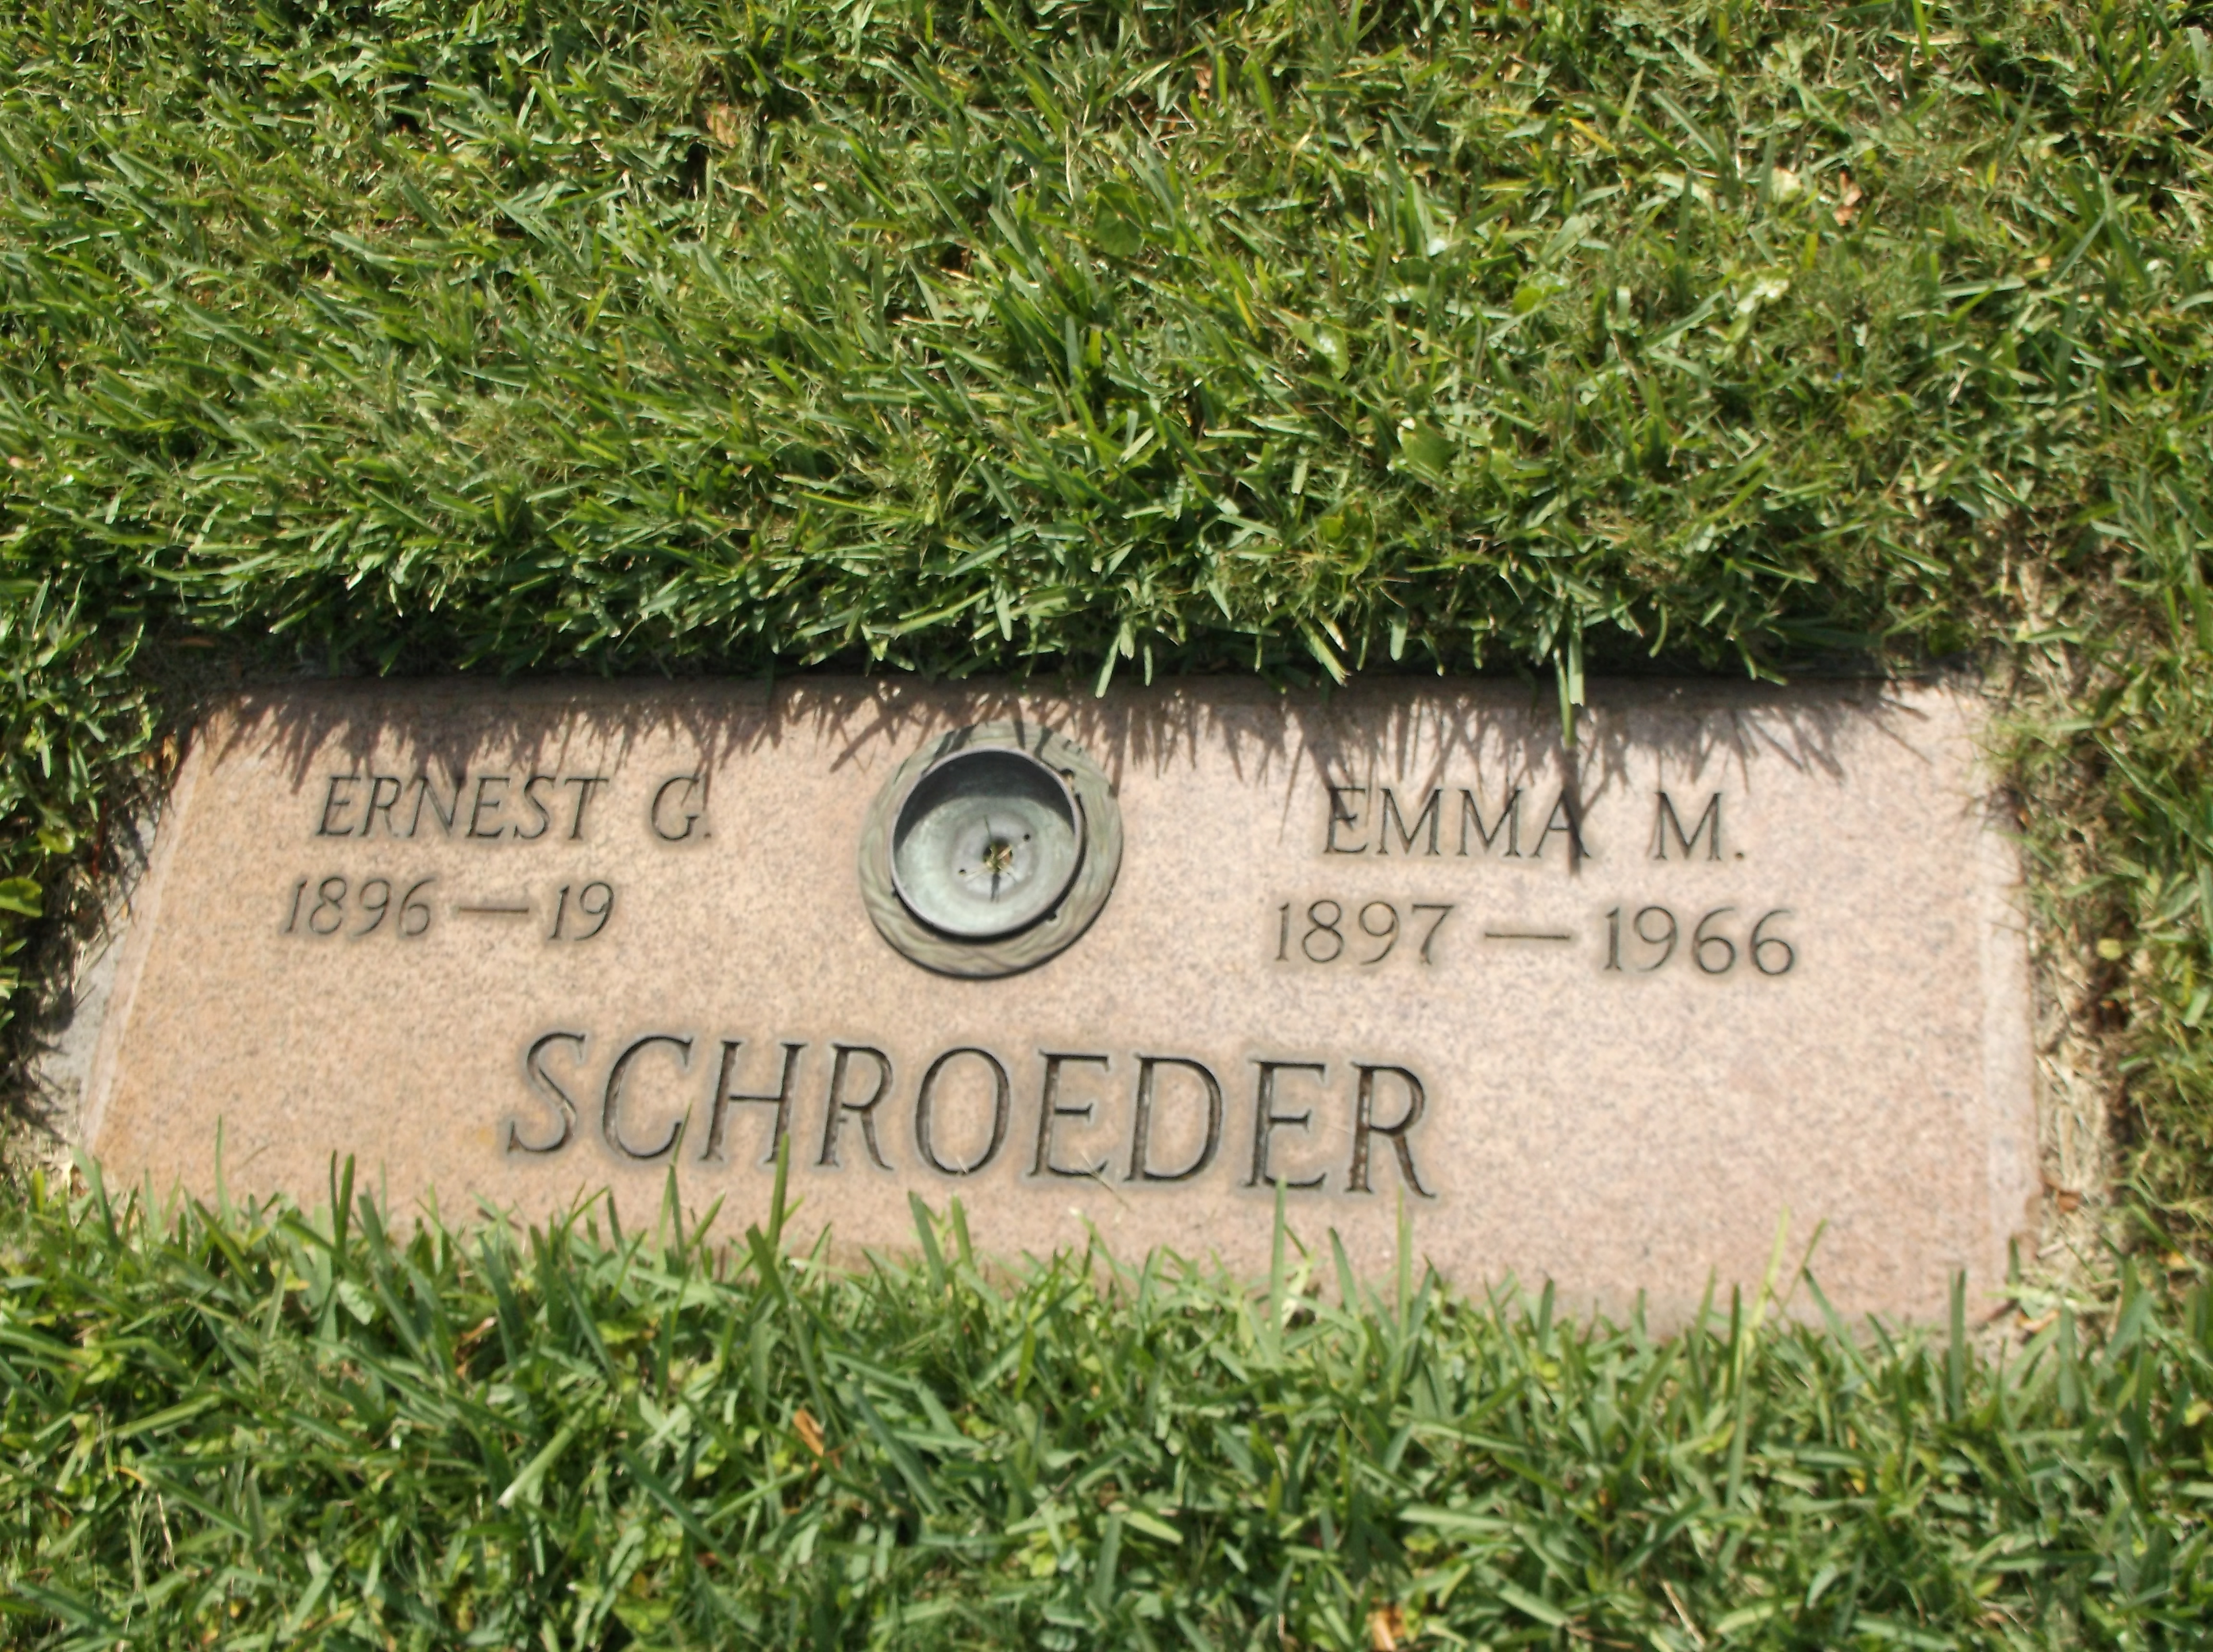 Ernest G Schroeder